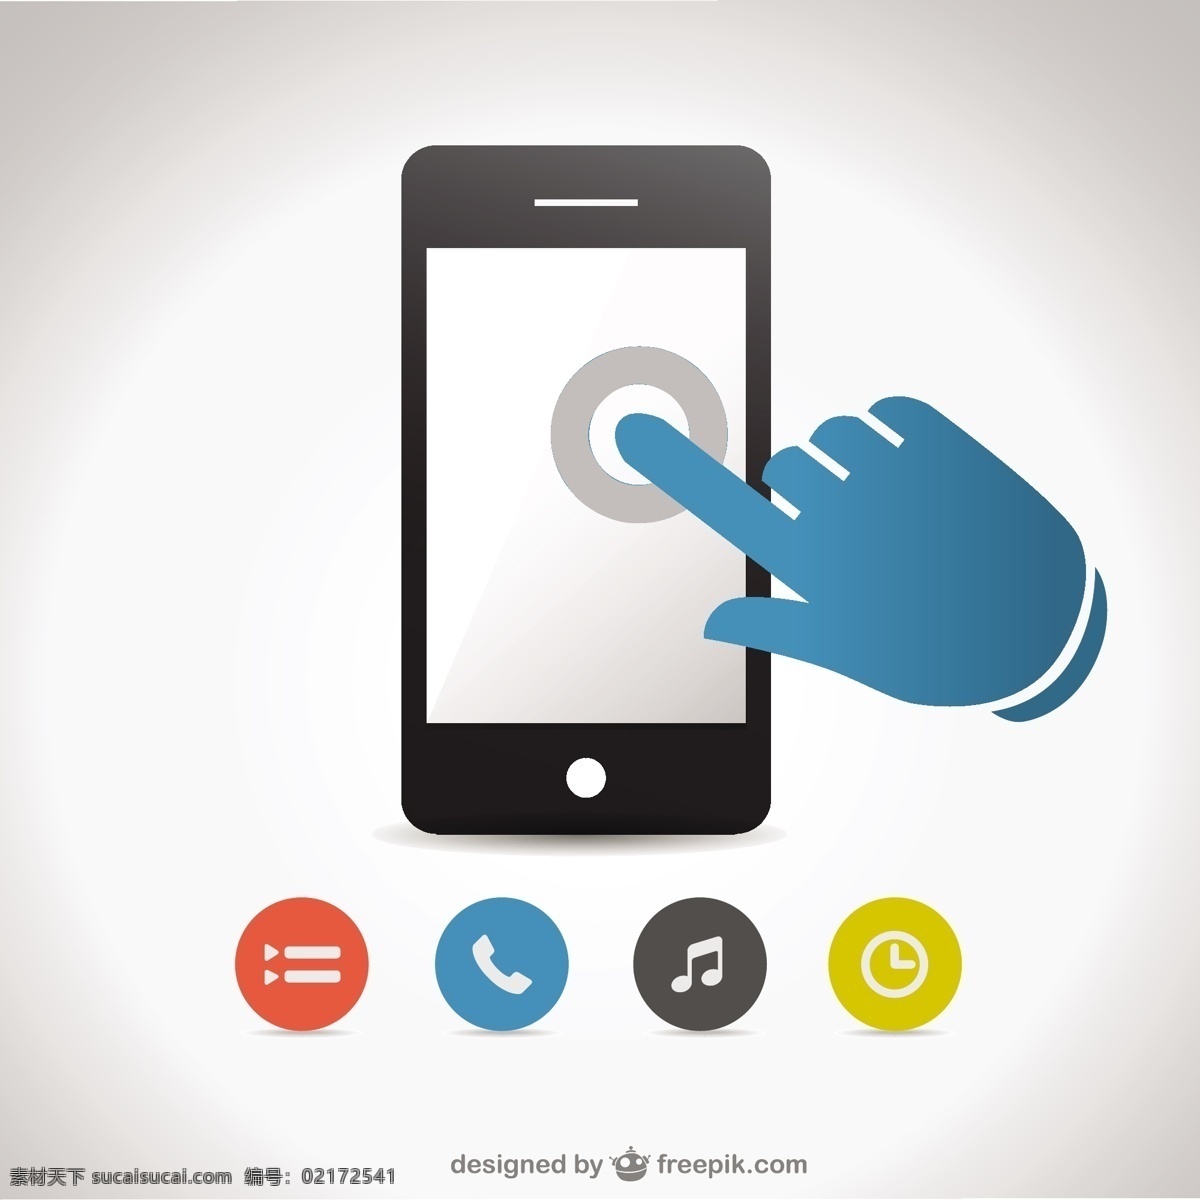 蓝 手 触摸 智能 手机 屏幕 图标 电话 技术 模板 网络 移动 平面 图形 布局 智能手机 平面设计 电话图标 应用程序 元素 白色